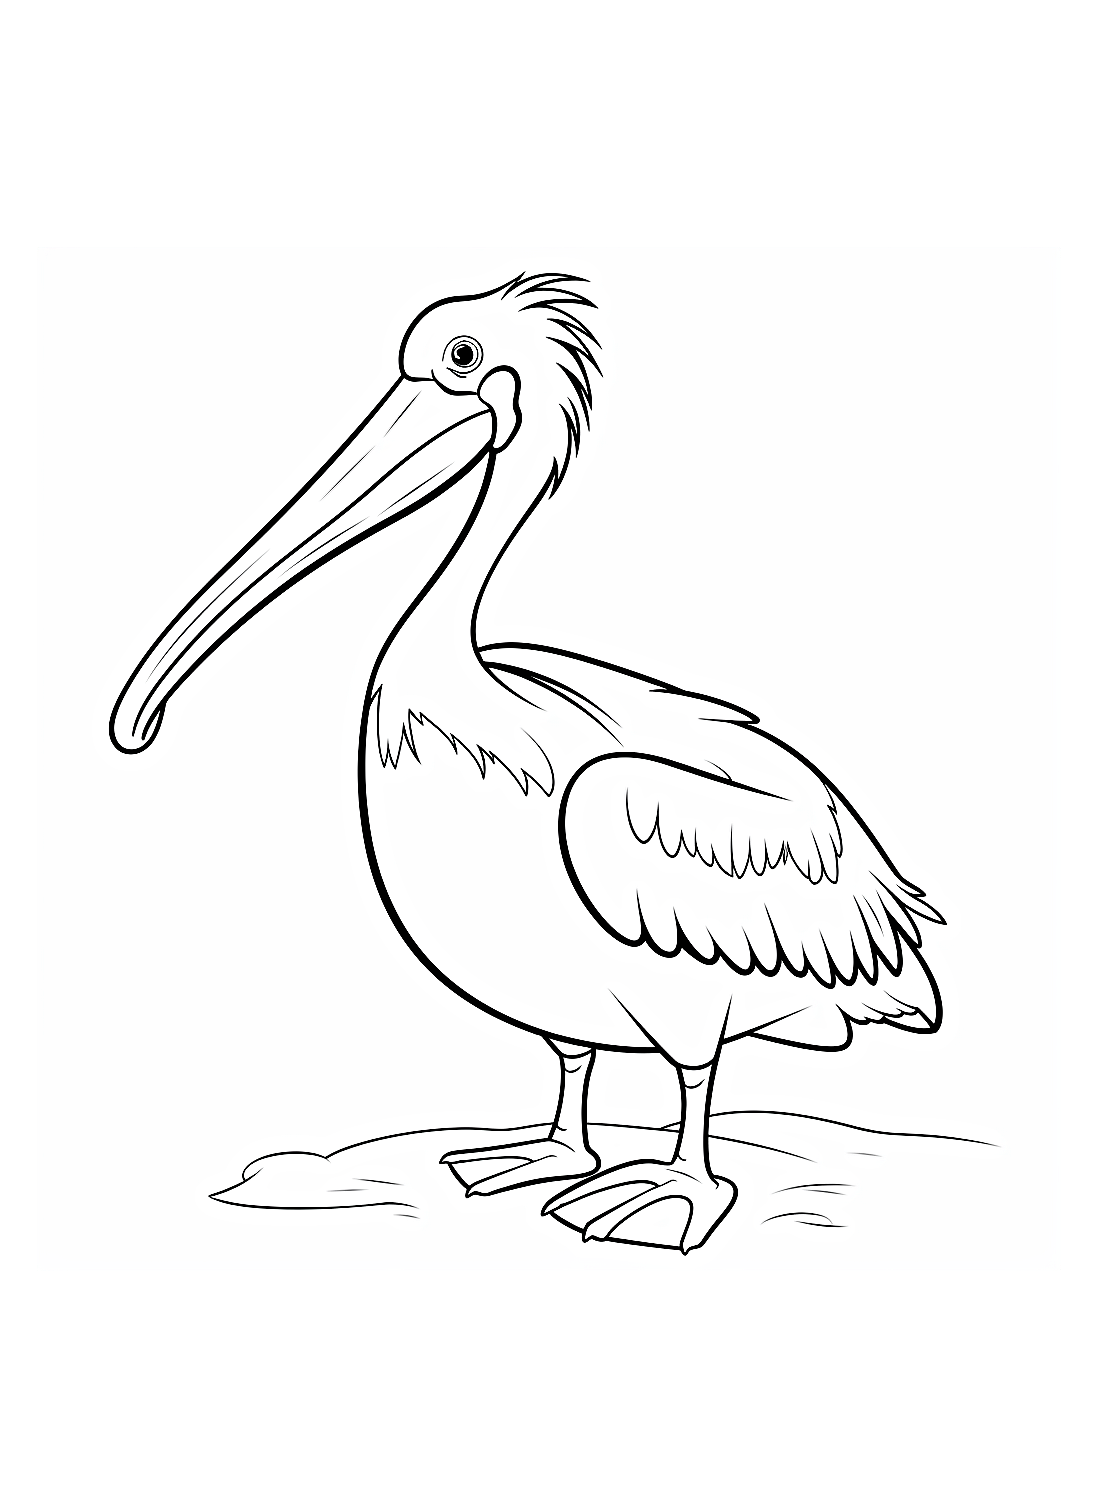 Pellicano libero da Pelican